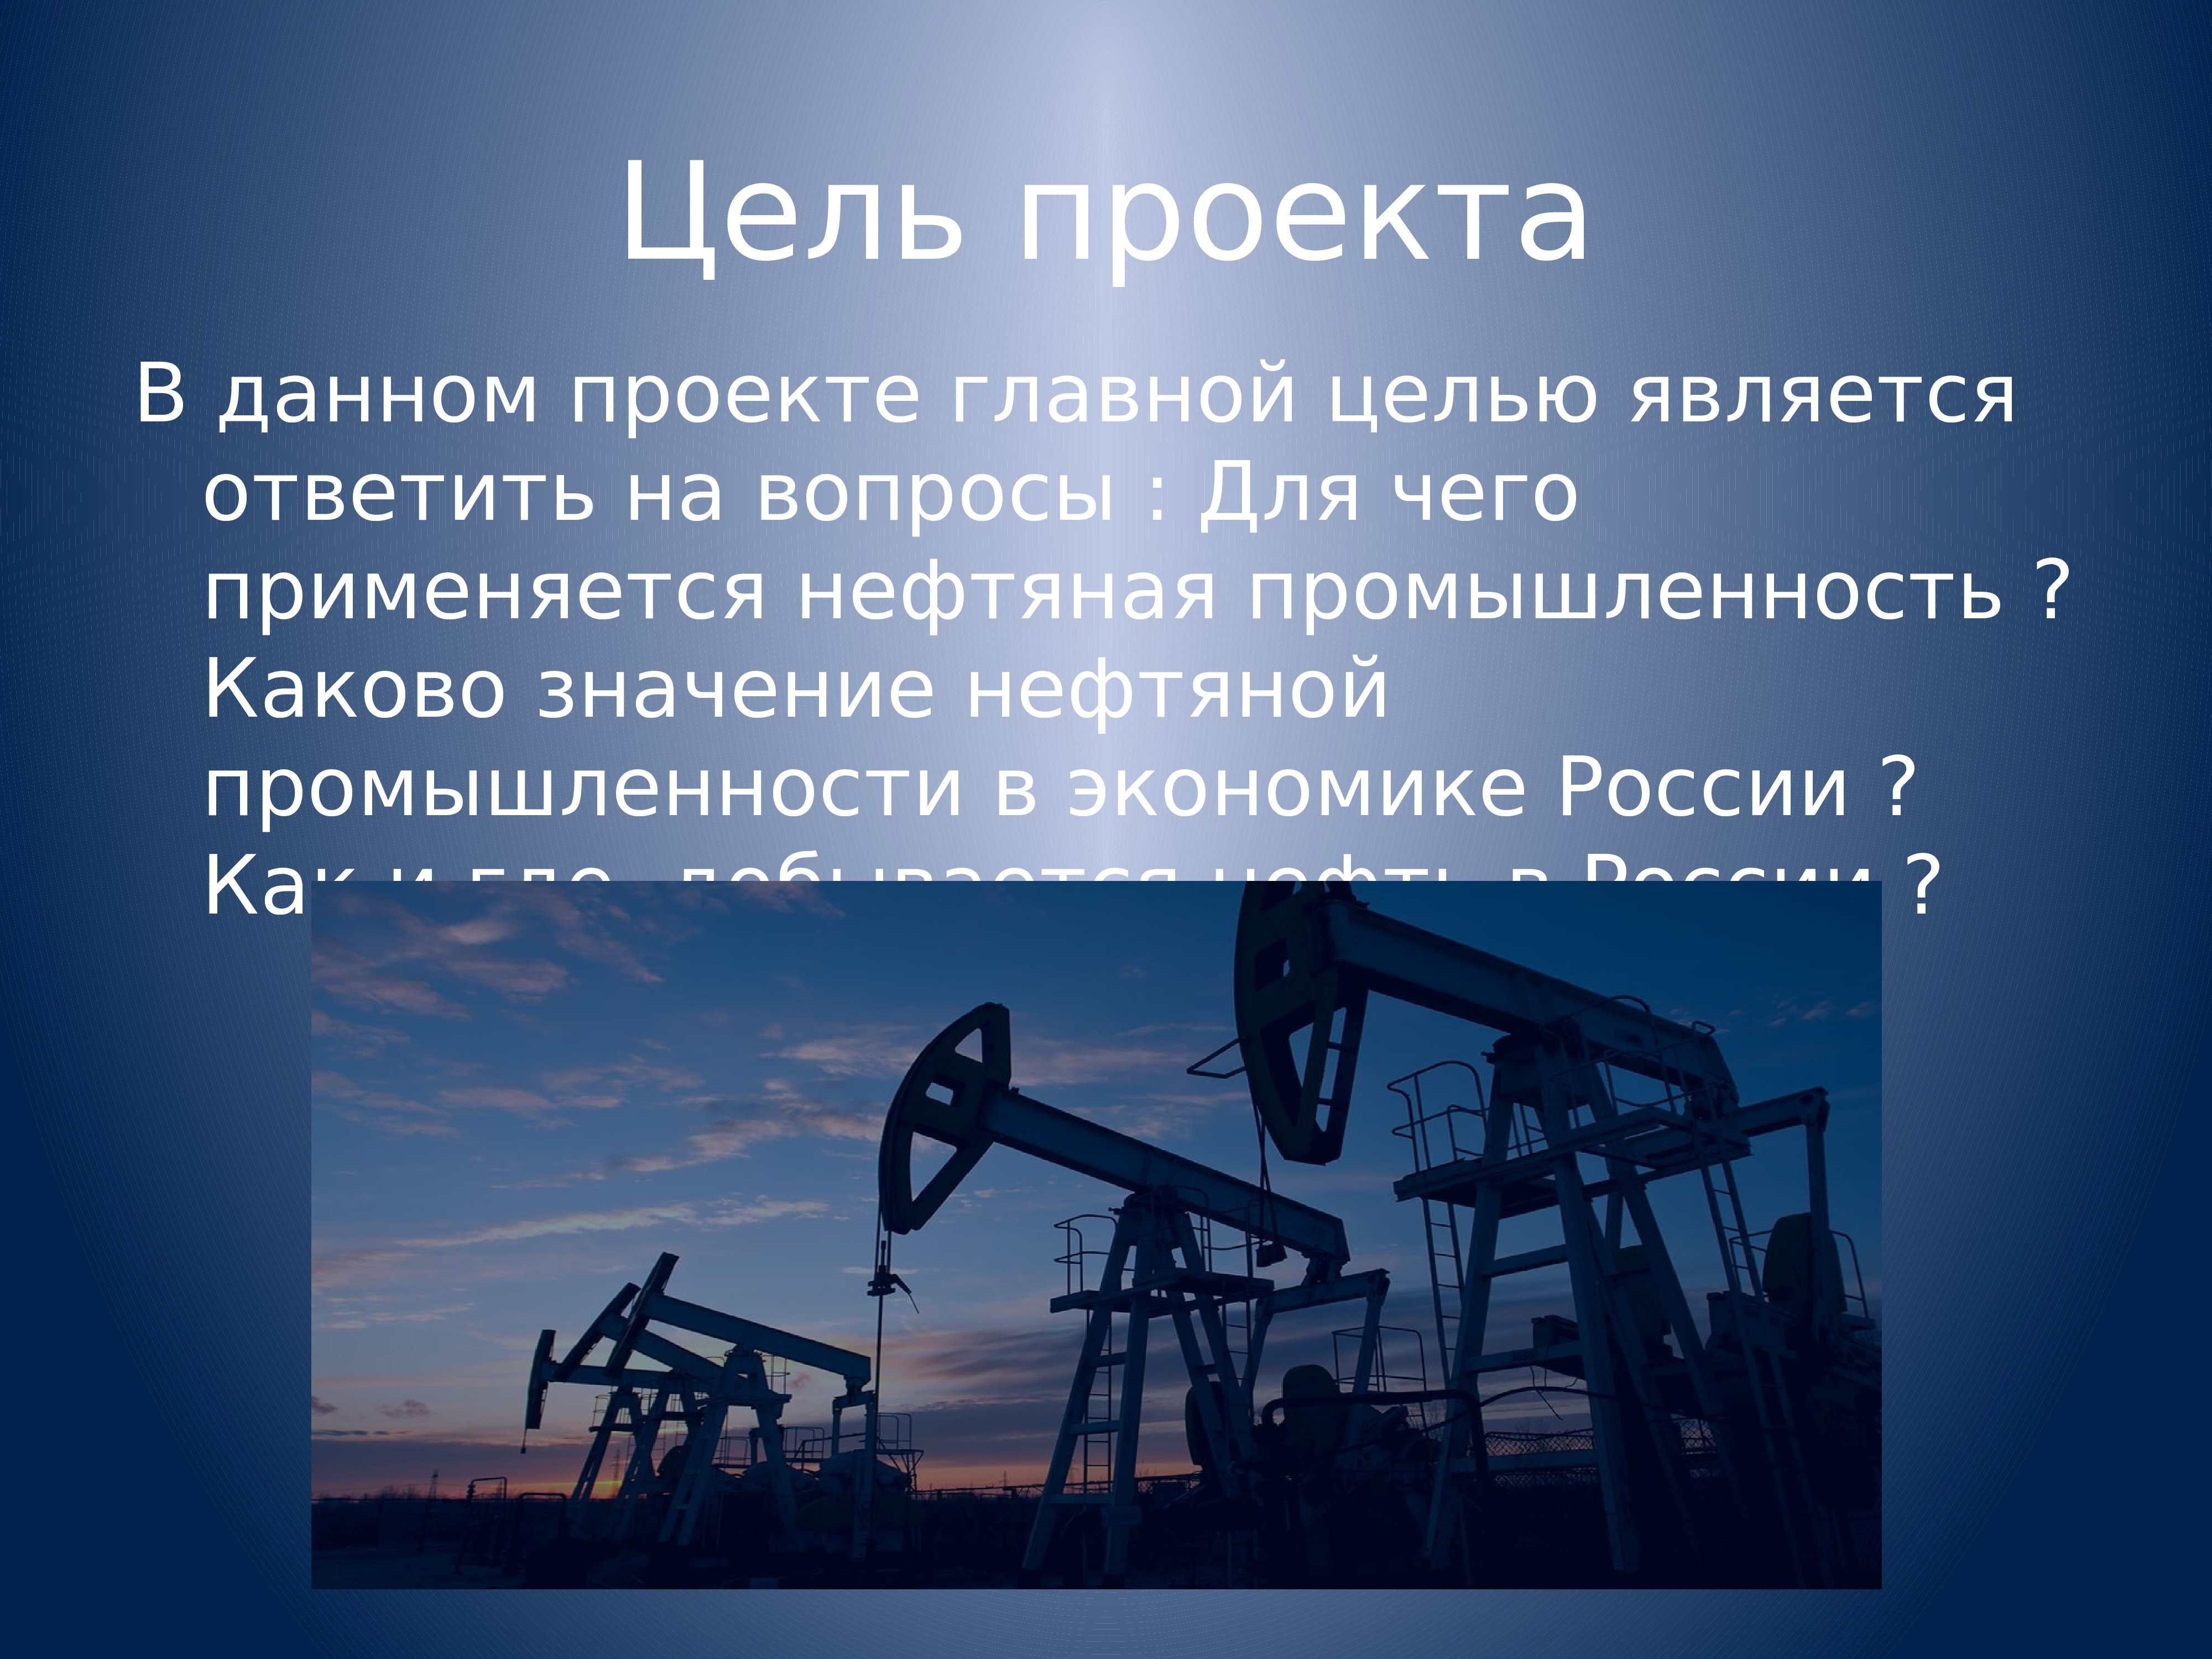 Все о нефти. Нефтяная промышленность России. Нефтяная промышленность презентация. Нефтяная промышленность Росси. Нефтяная промышленность цели проекта.